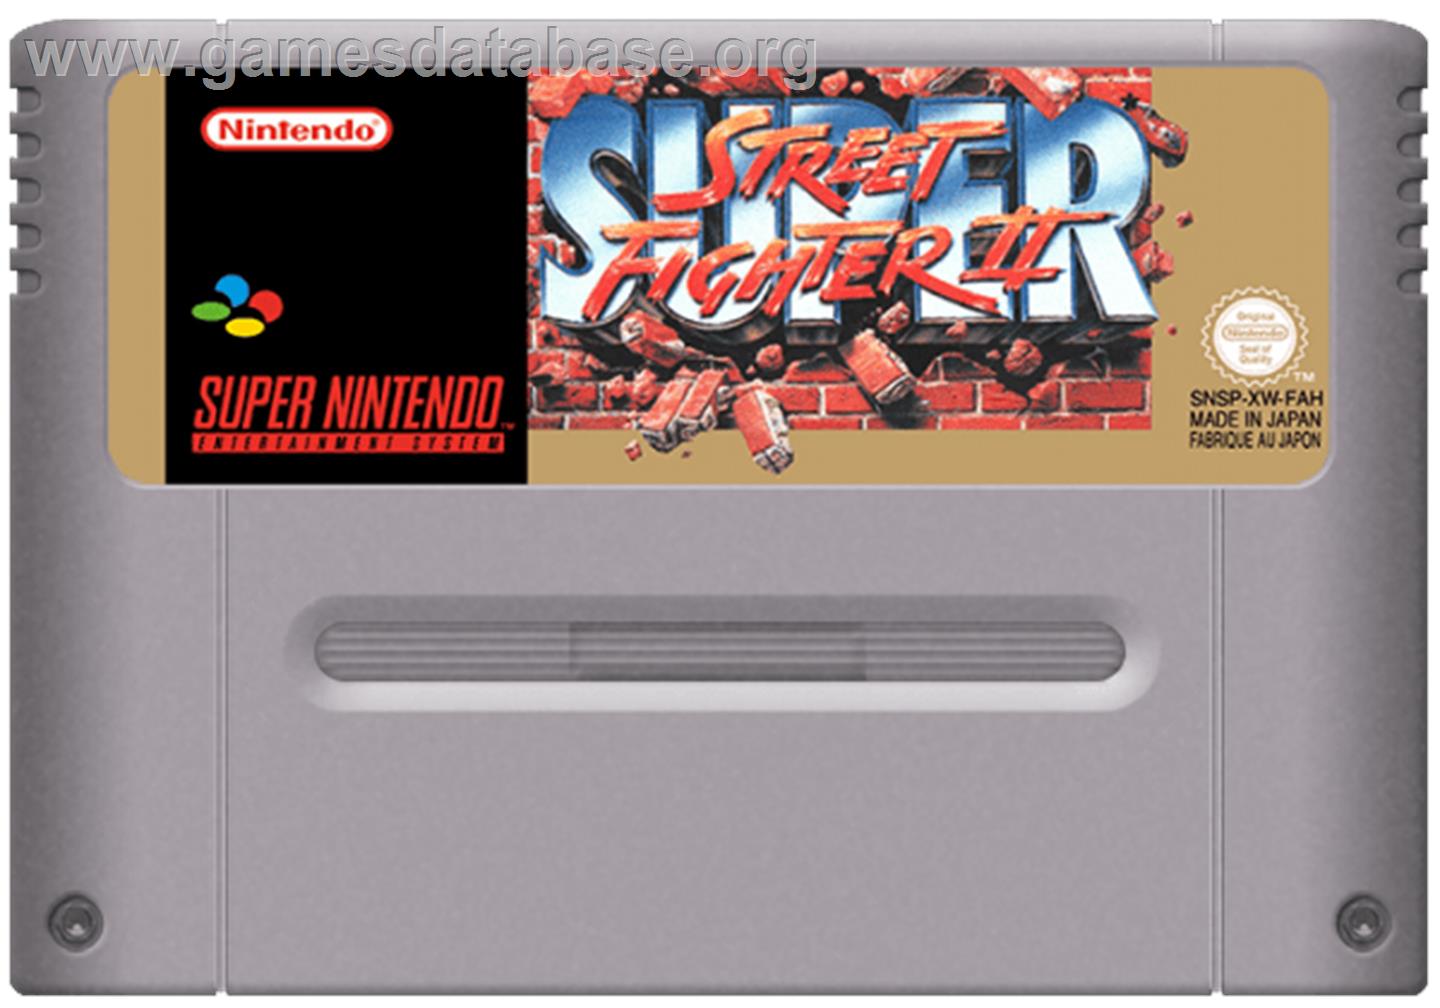 Super Street Fighter II: The New Challengers - Nintendo SNES - Artwork - Cartridge